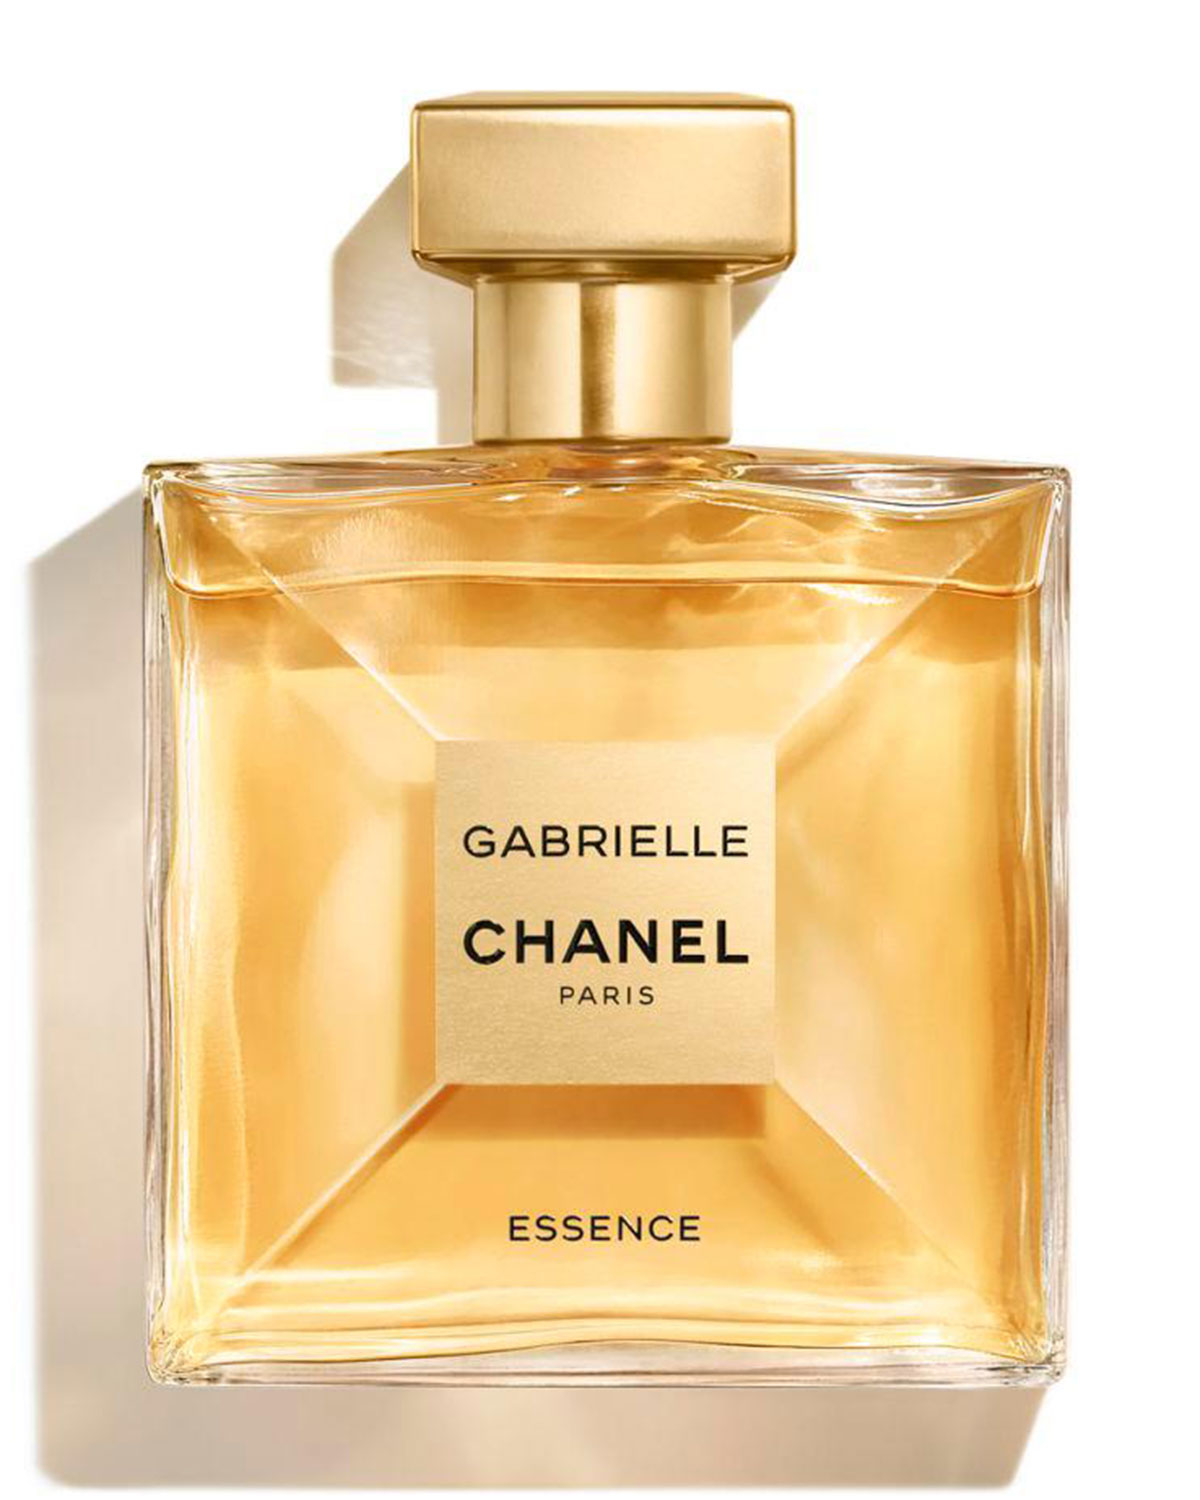 Gabrielle Chanel Gift Set 2 pcs Eau de Parfum 3.4oz , for women's